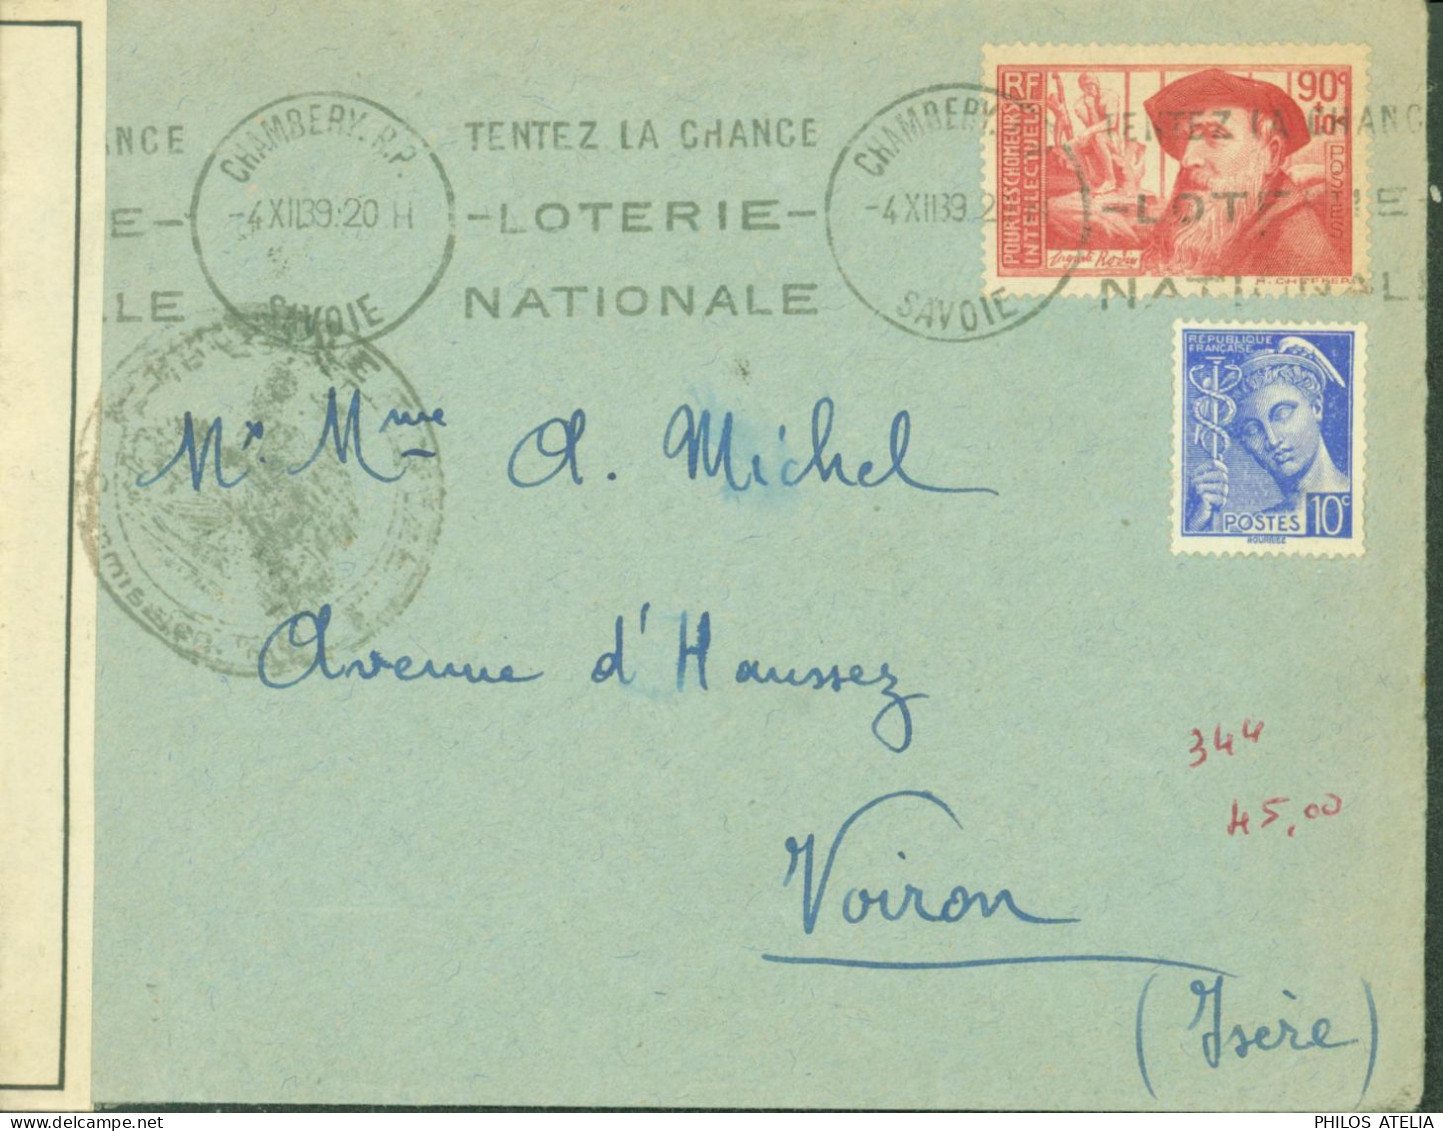 Guerre 40 YT N°344 Rodin + Mercure N+407 CAD Chambéry RP Savoie 4 XII 39 Censure Bande + Cachet NB195 Grenoble - Guerra De 1939-45